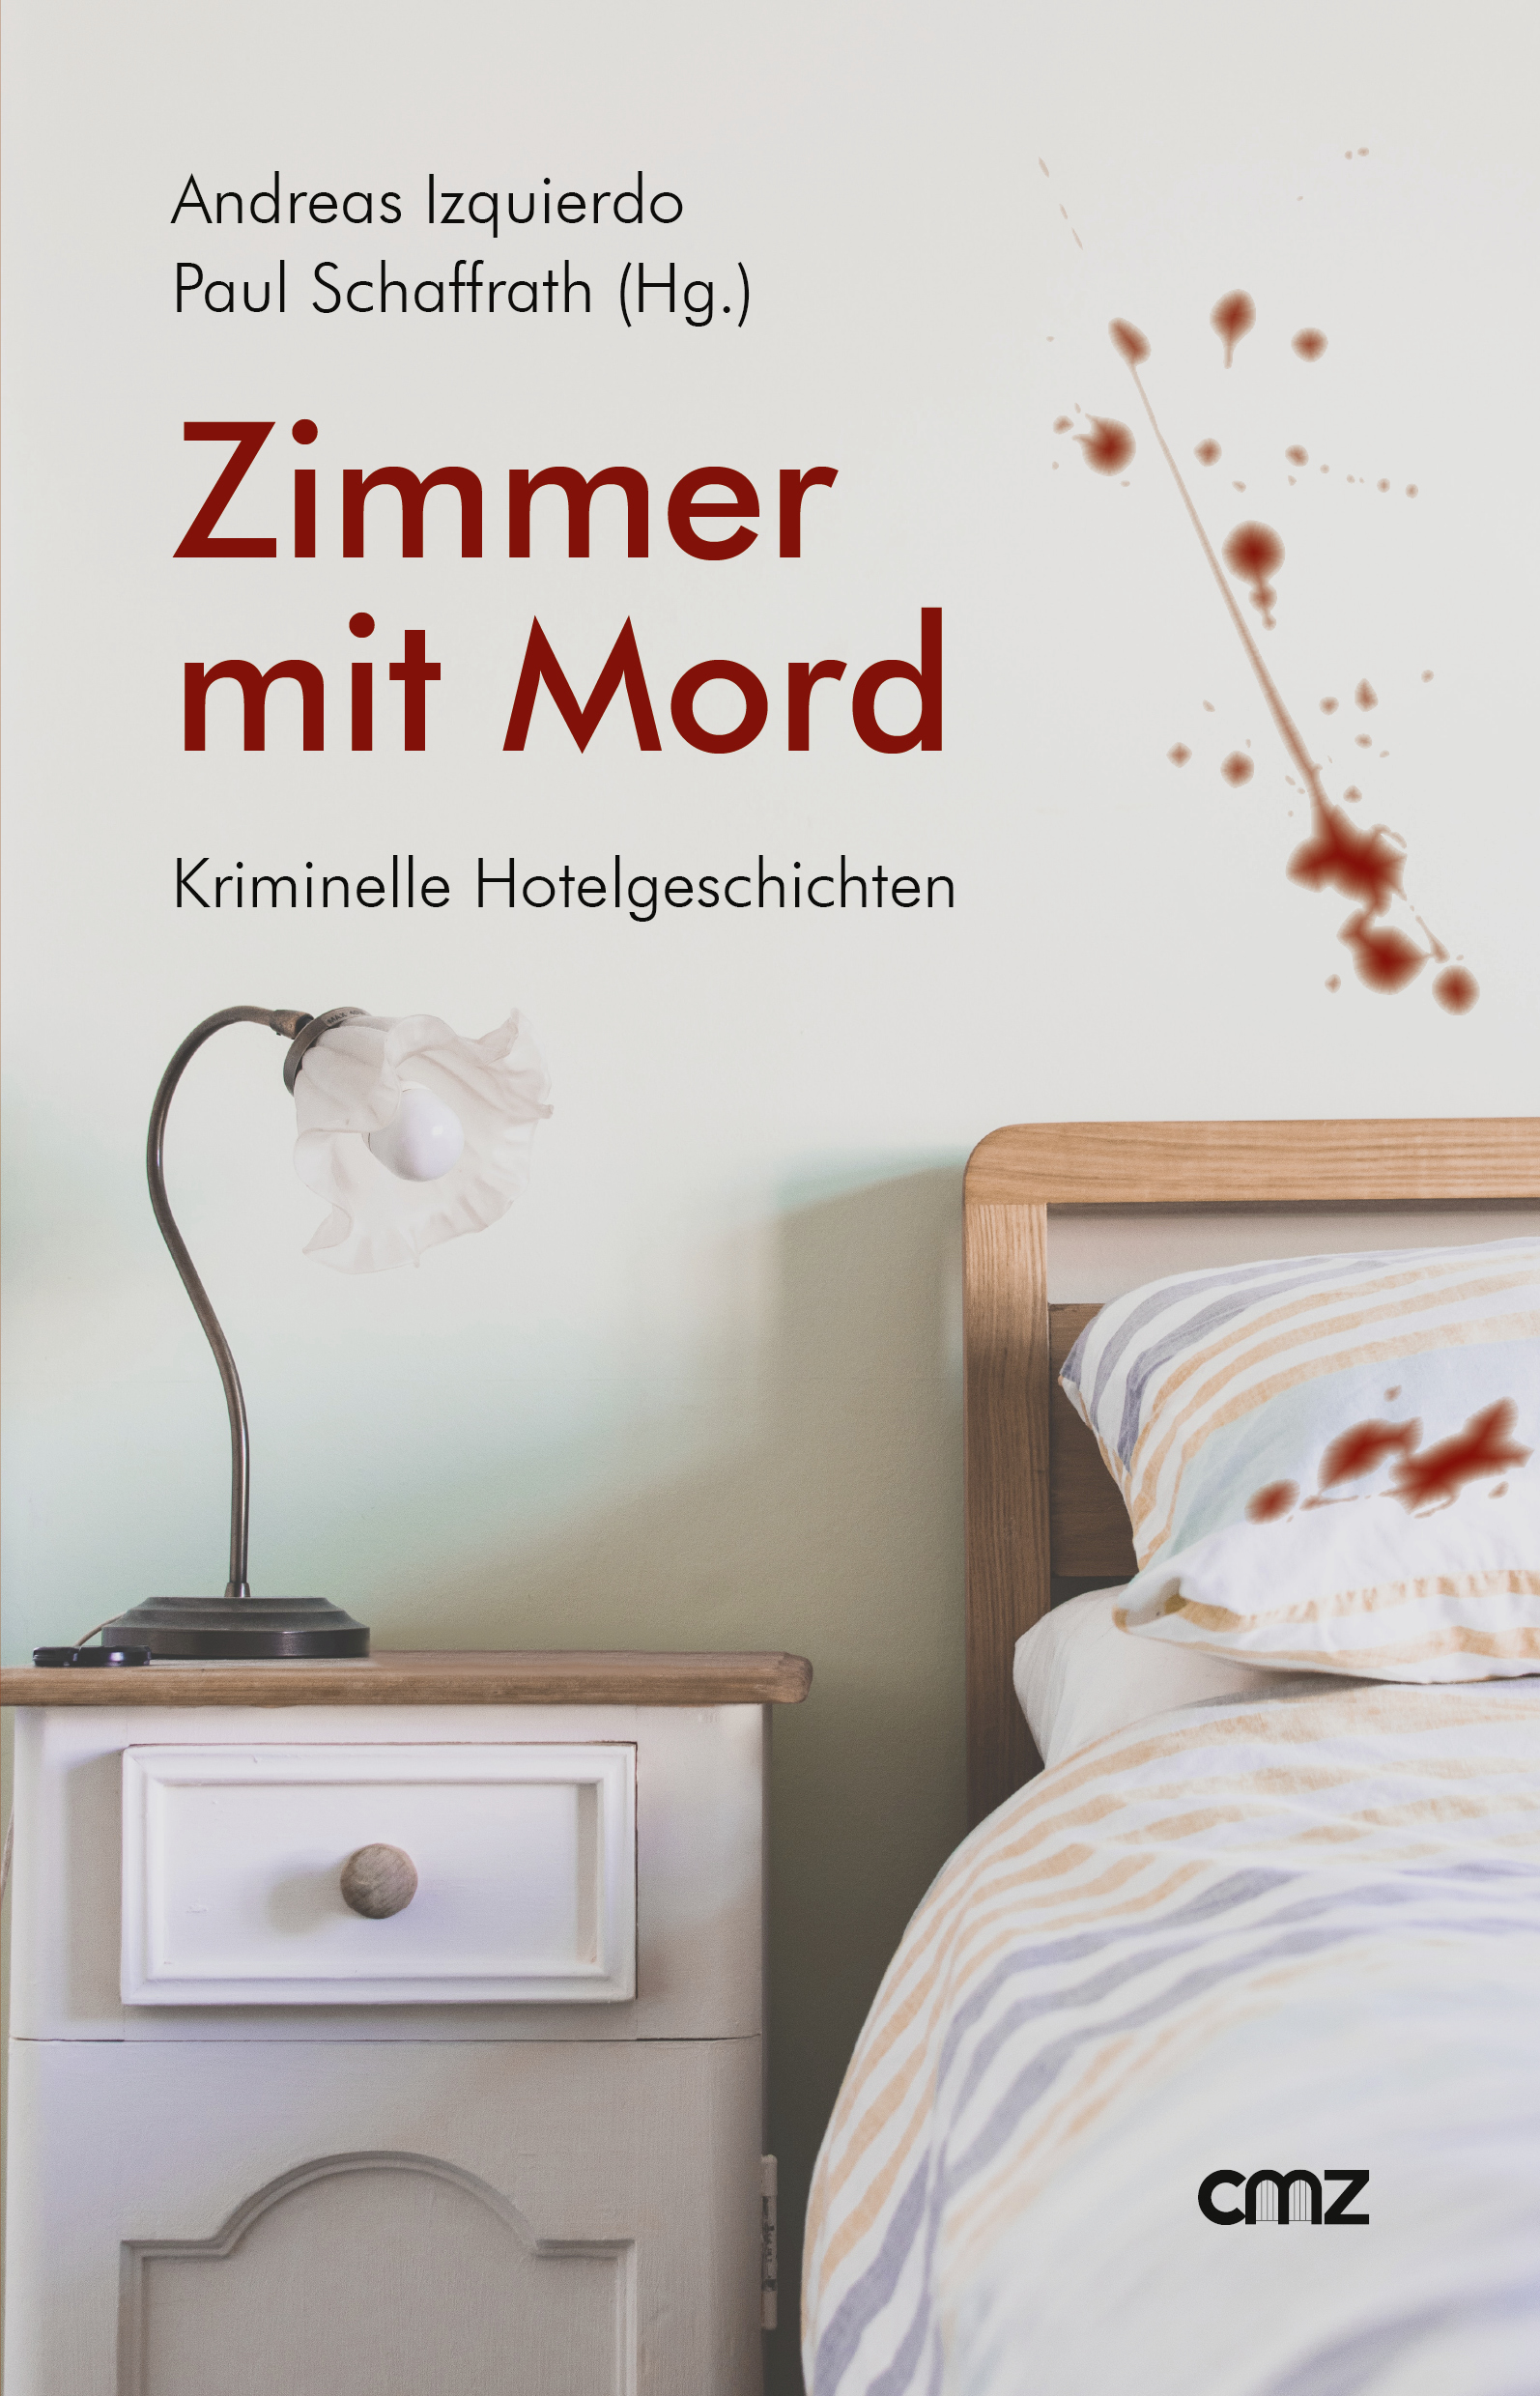 Andreas Izquierdo, Paul Schaffrath (Hg.) - Zimmer mit Mord